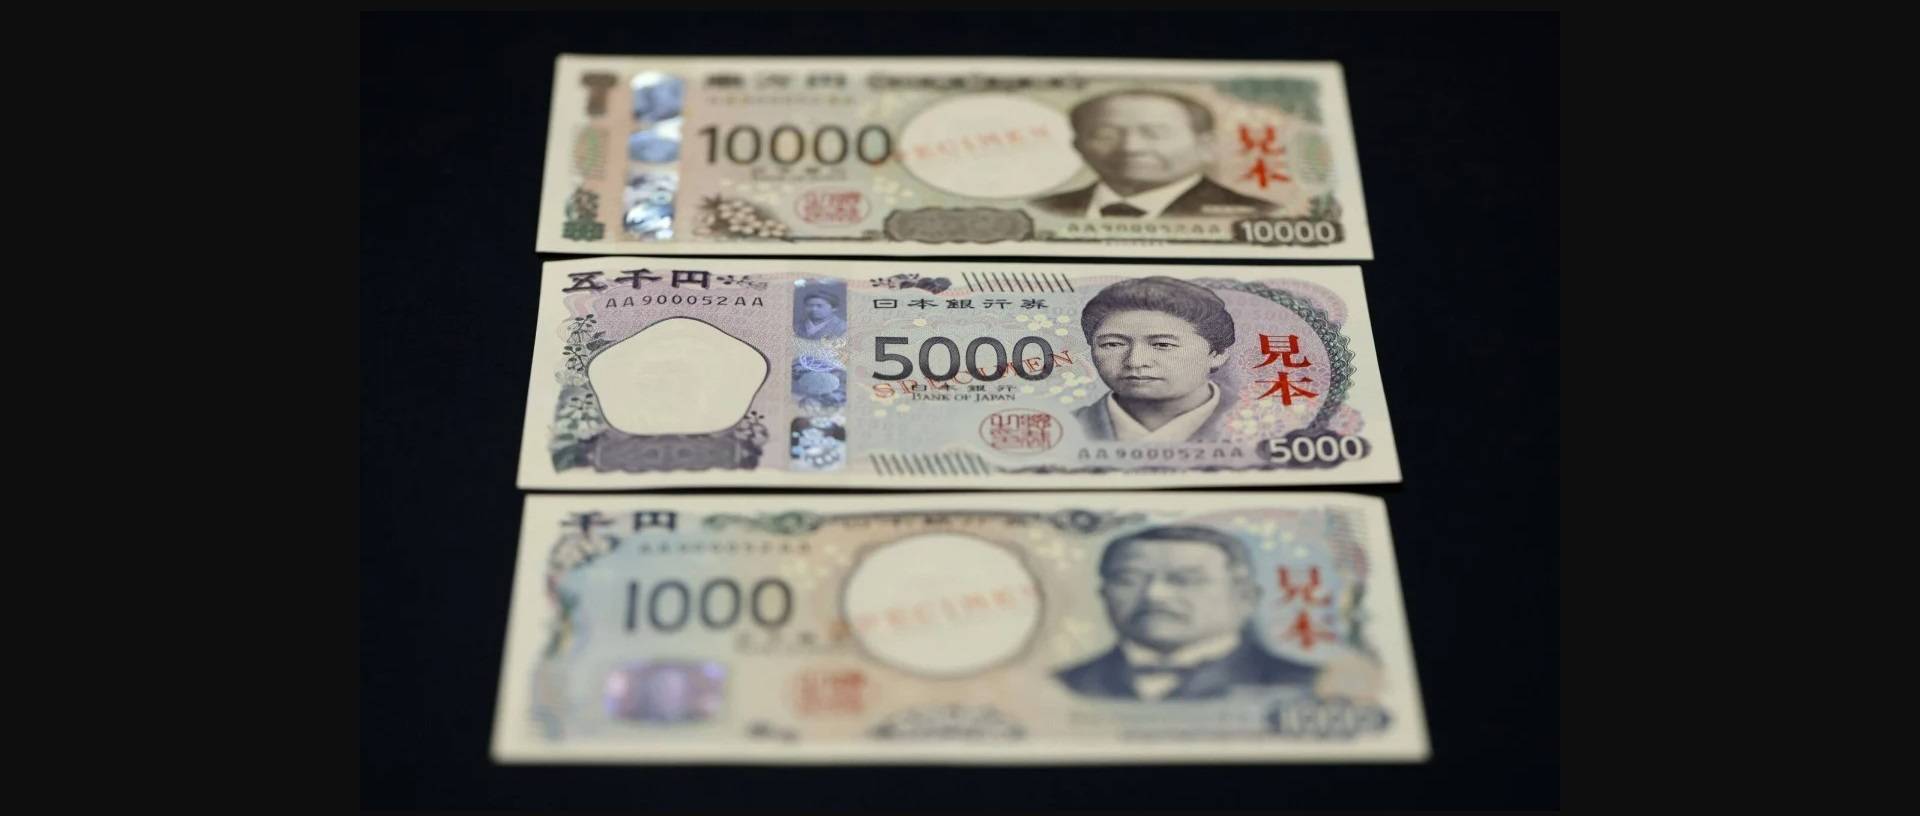 الأولى من نوعها.. اليابان تصدر أوراقاً نقدية «ثلاثية الأبعاد» | شبكة اخبار انونيوز | Onw News Network